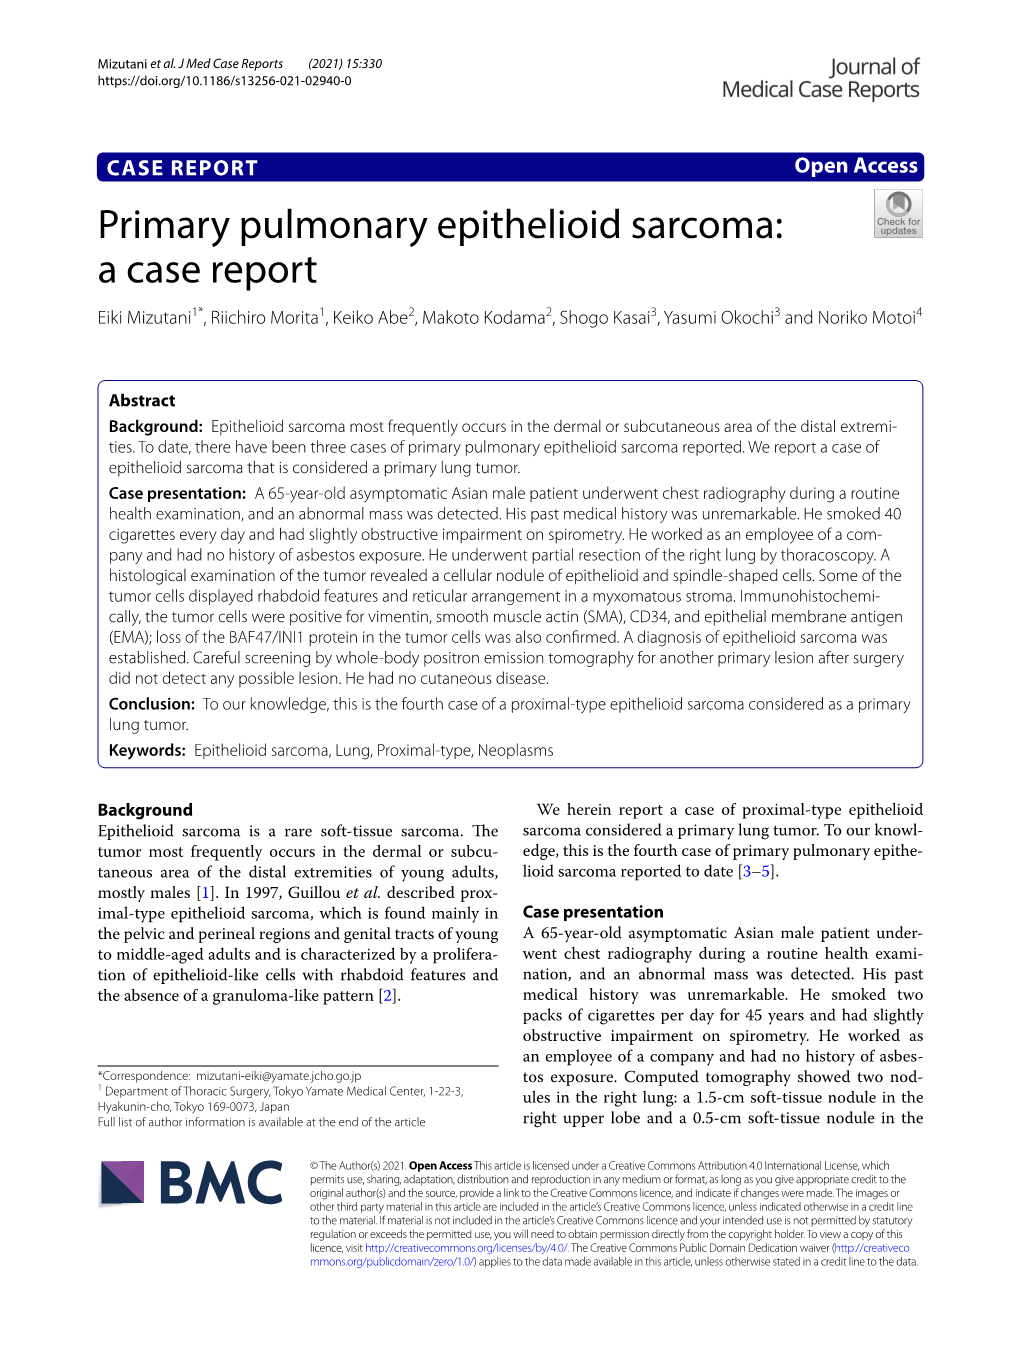 Primary Pulmonary Epithelioid Sarcoma: a Case Report Eiki Mizutani1*, Riichiro Morita1, Keiko Abe2, Makoto Kodama2, Shogo Kasai3, Yasumi Okochi3 and Noriko Motoi4